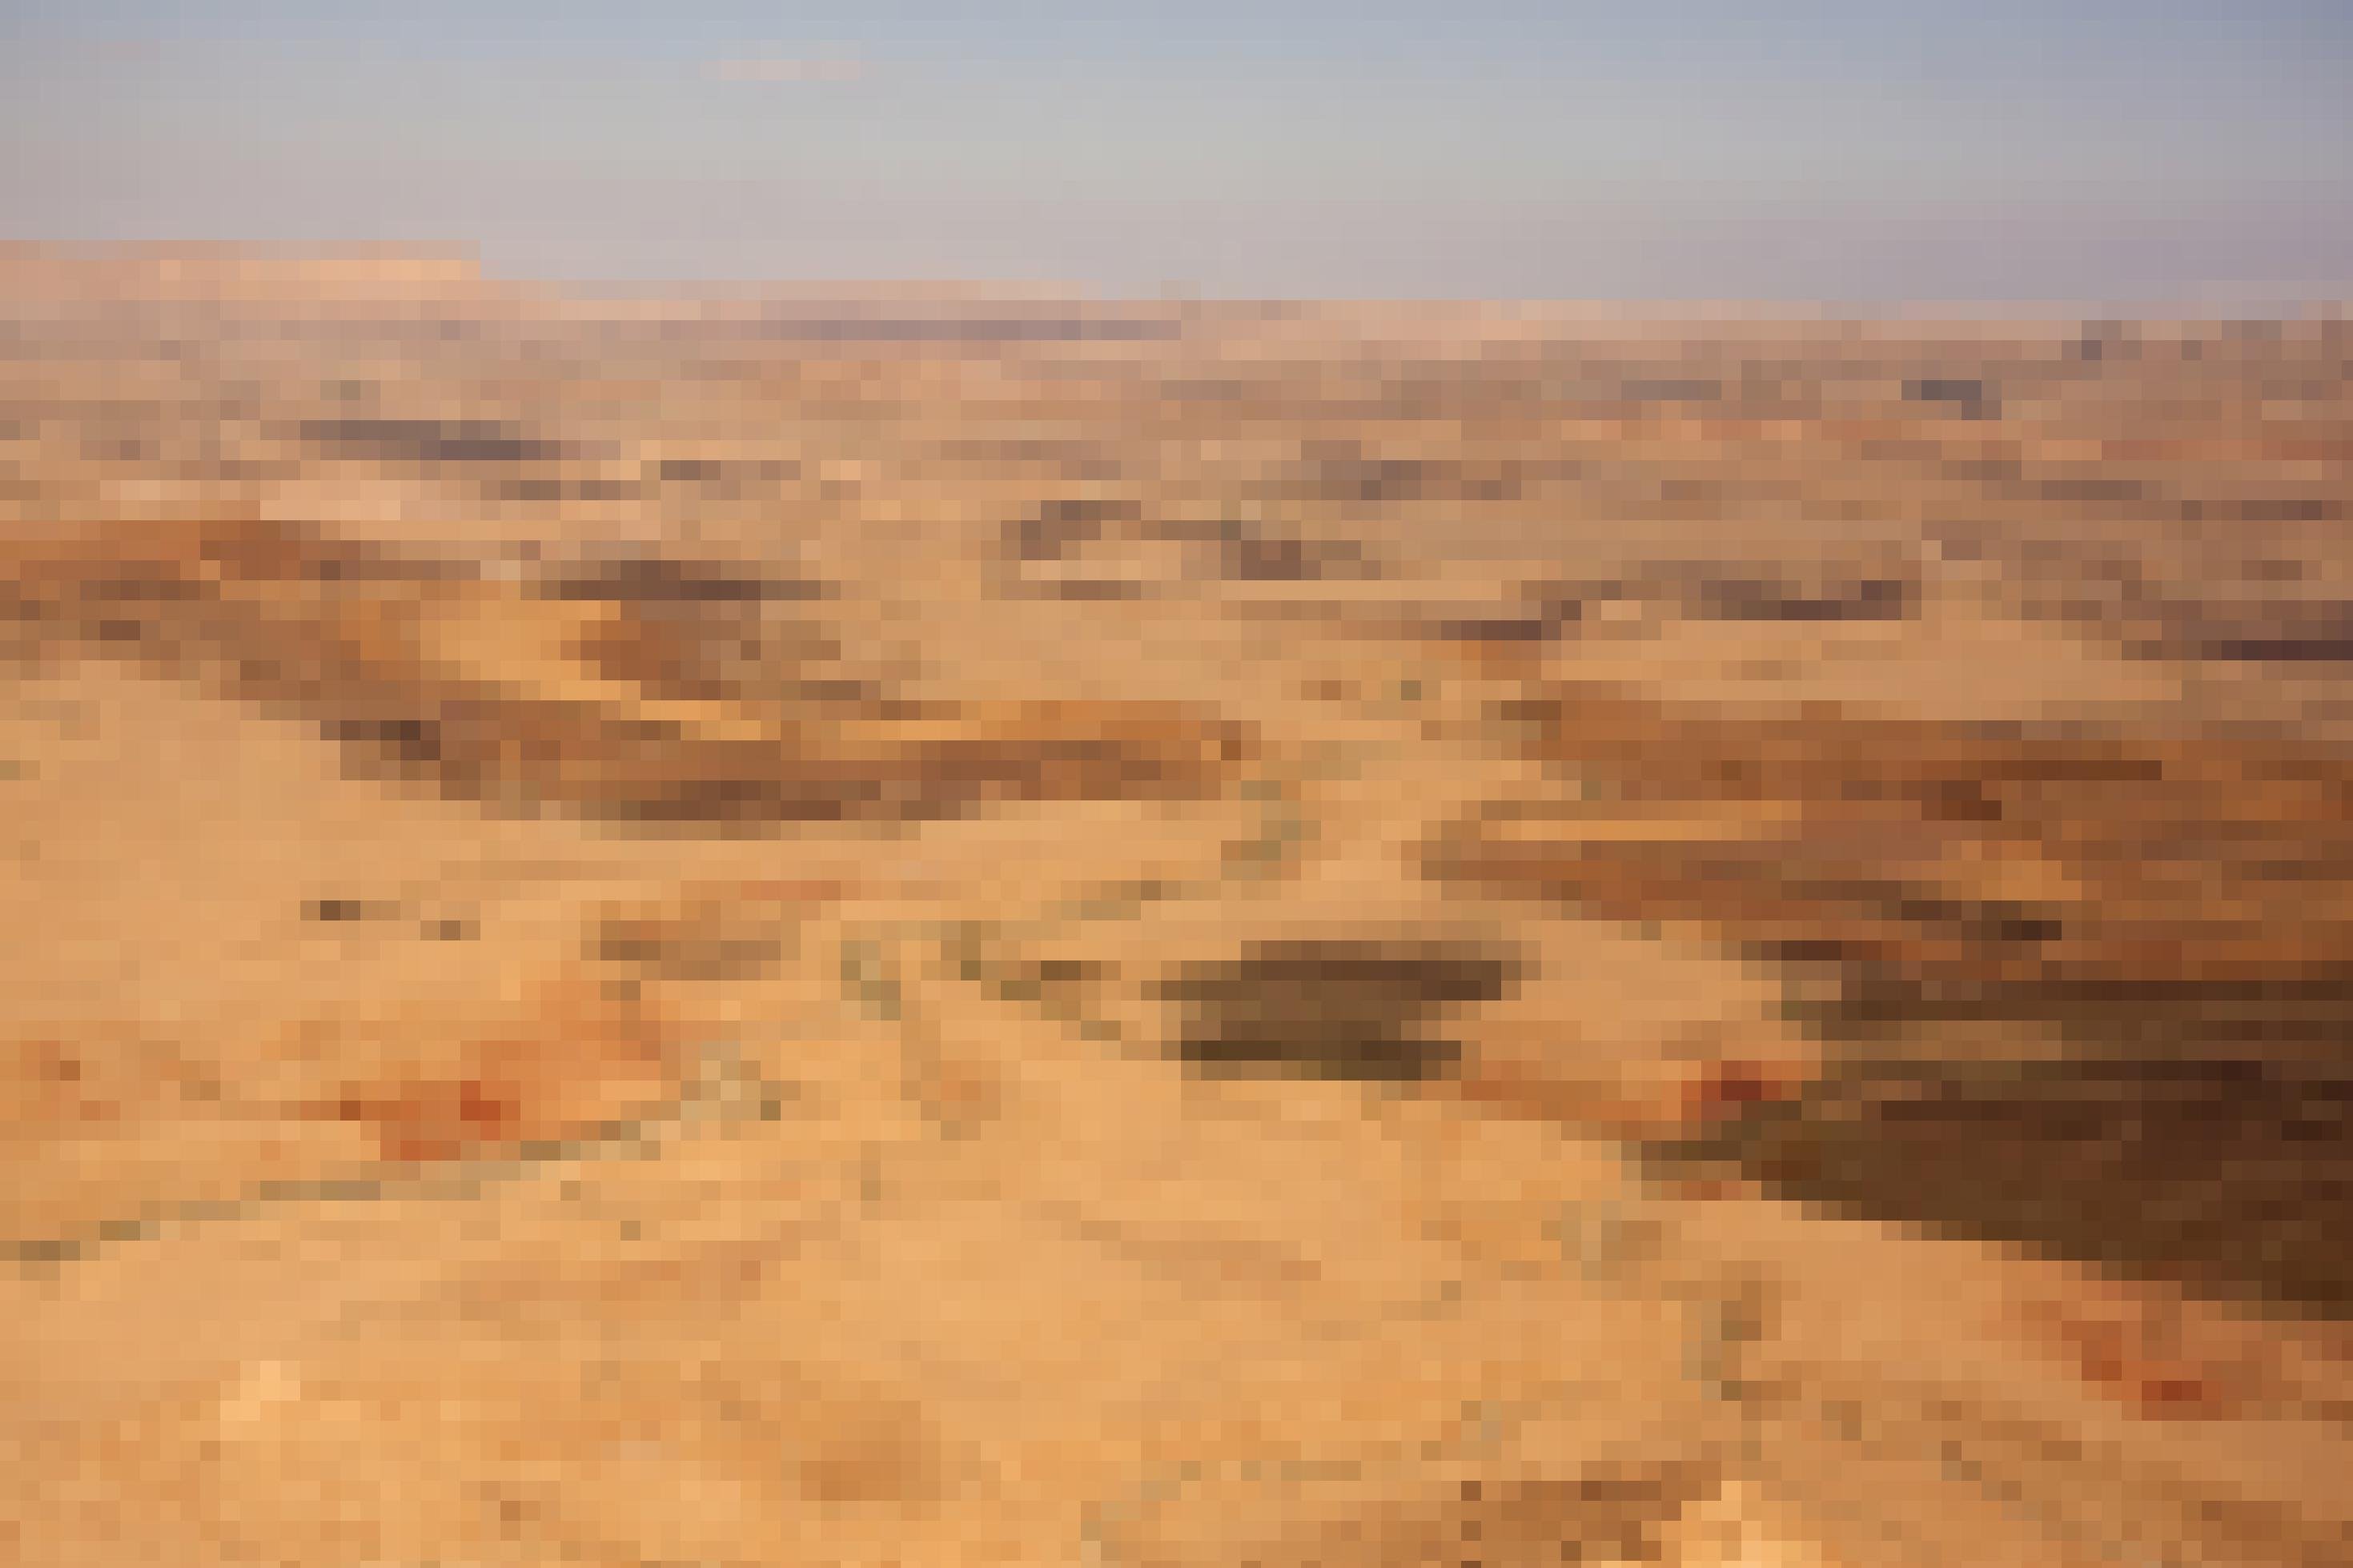 Ein Foto der Negev-Wüste in Israel. Eine weite Steinwüste so weit das Auge reicht.